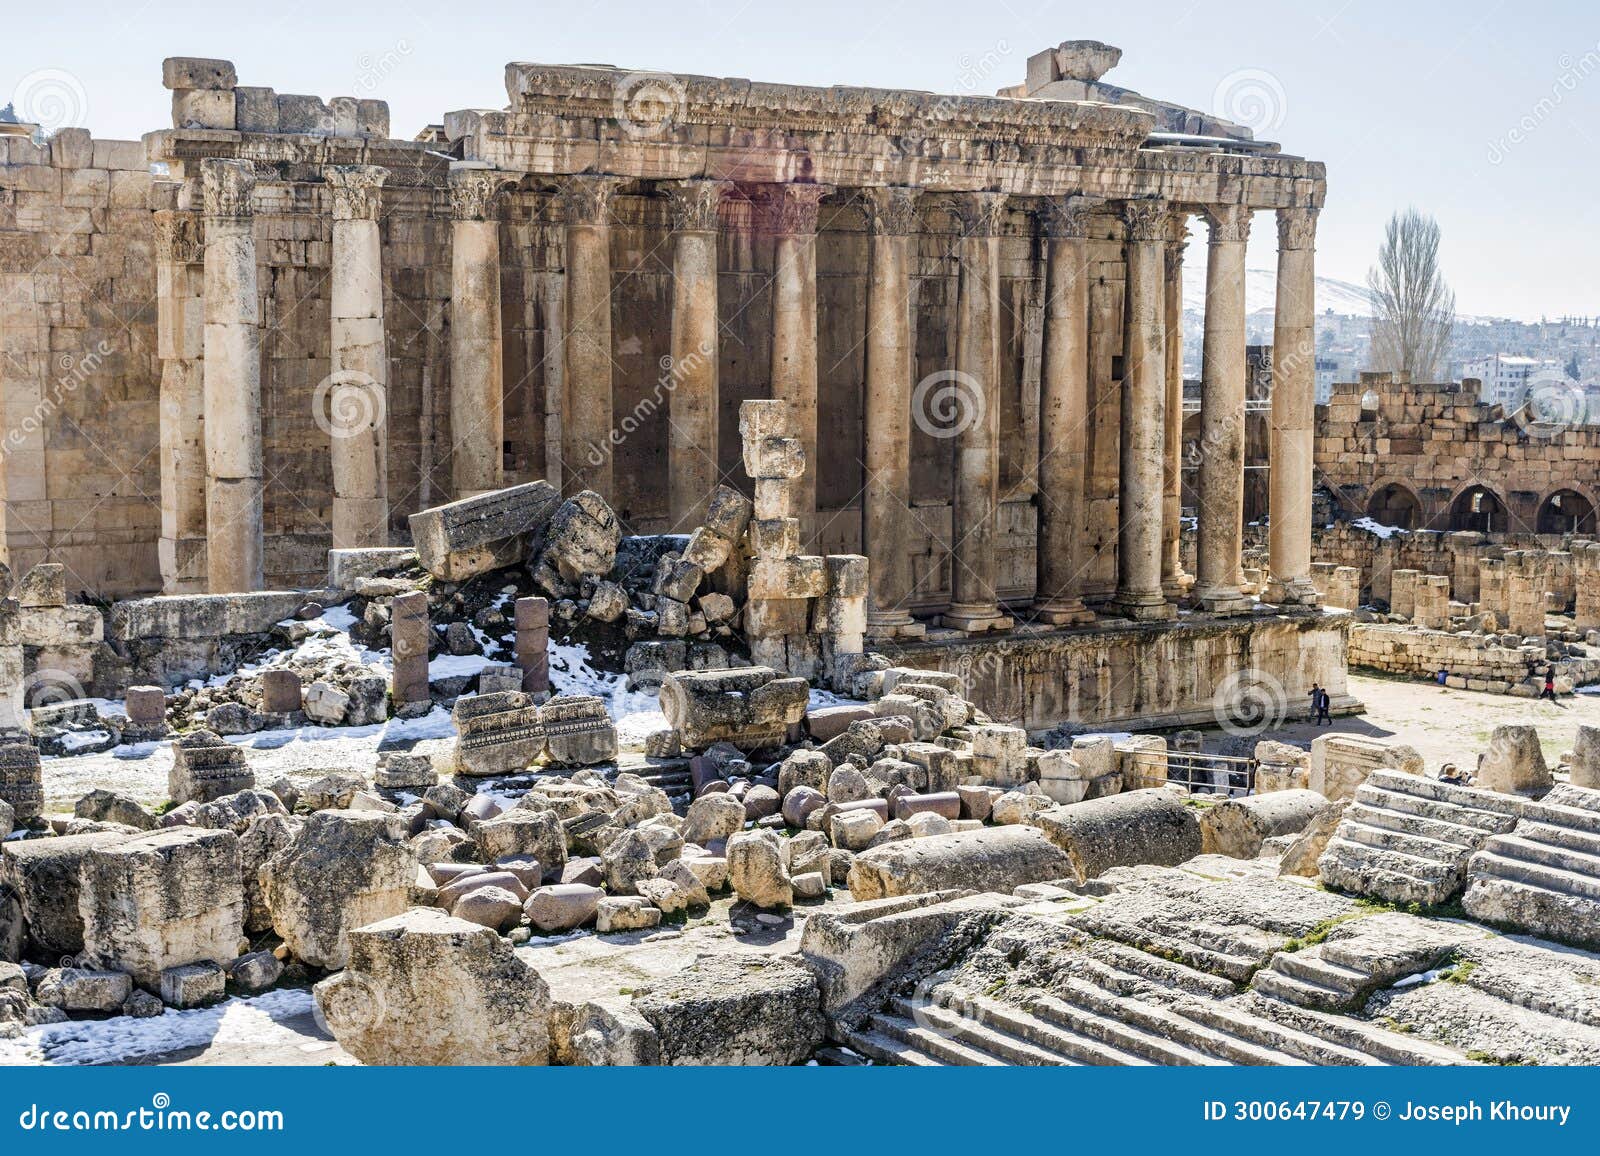 temple of bacchus, heliopolis roman ruins, baalbek, lebanon